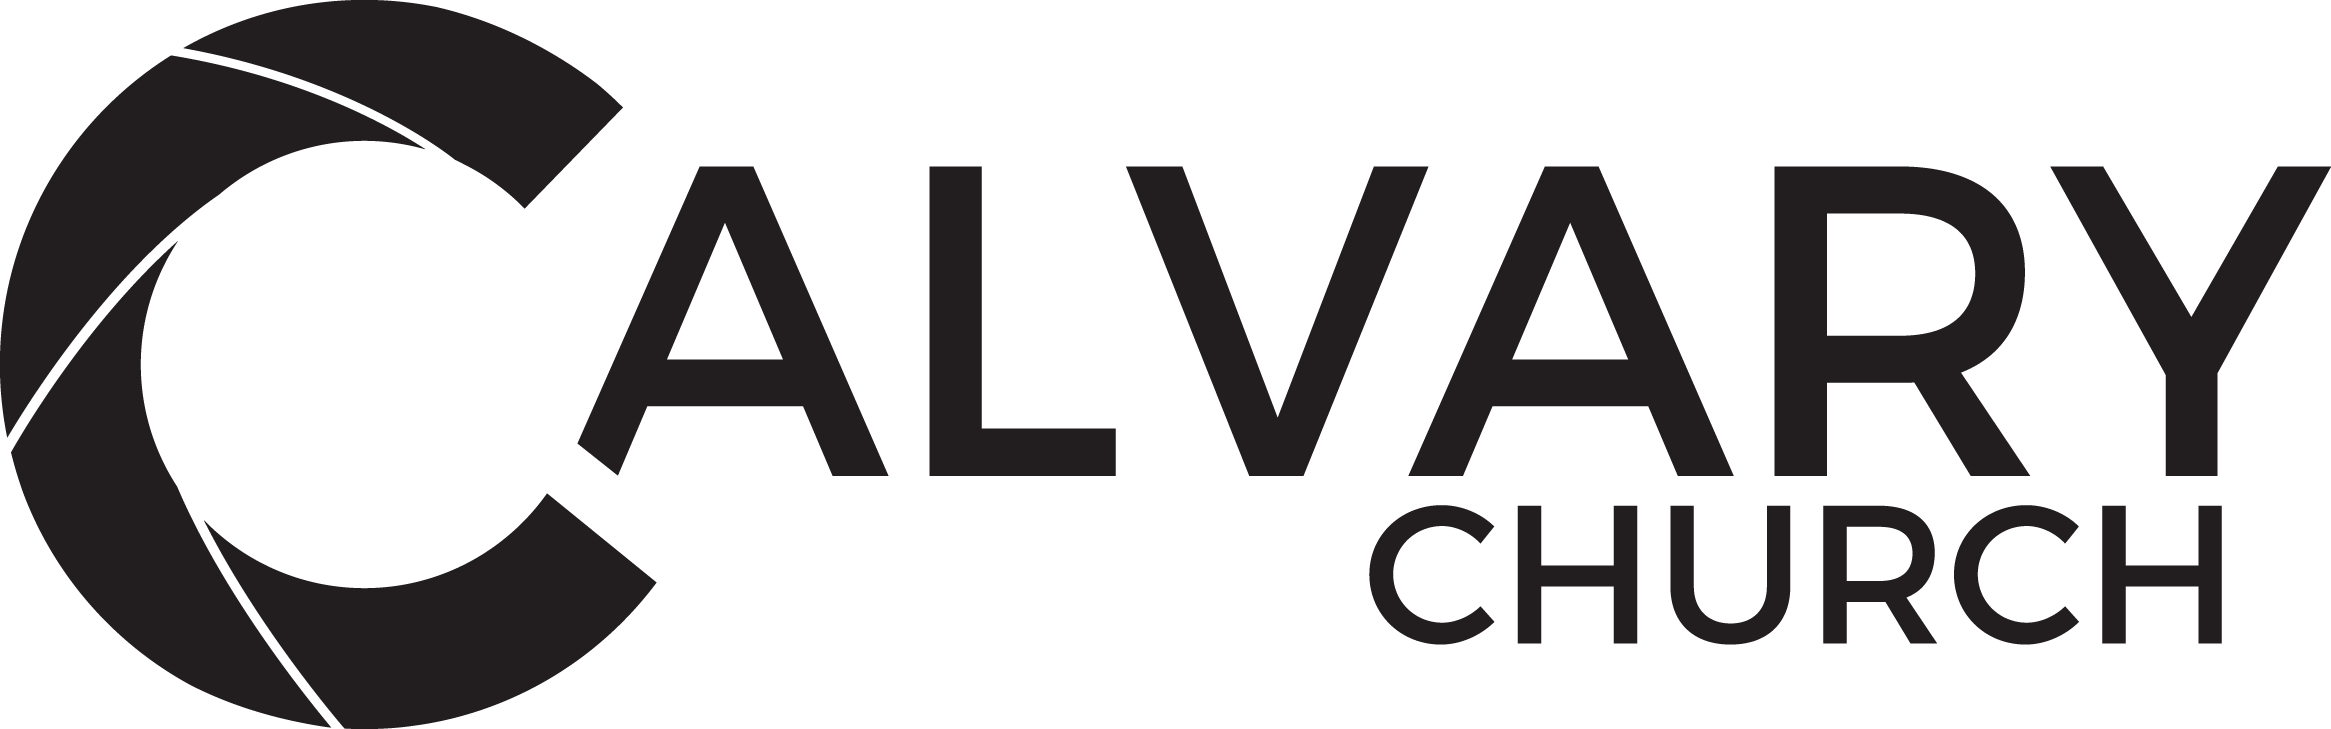 Calvary Church Logo_2017_BLACK